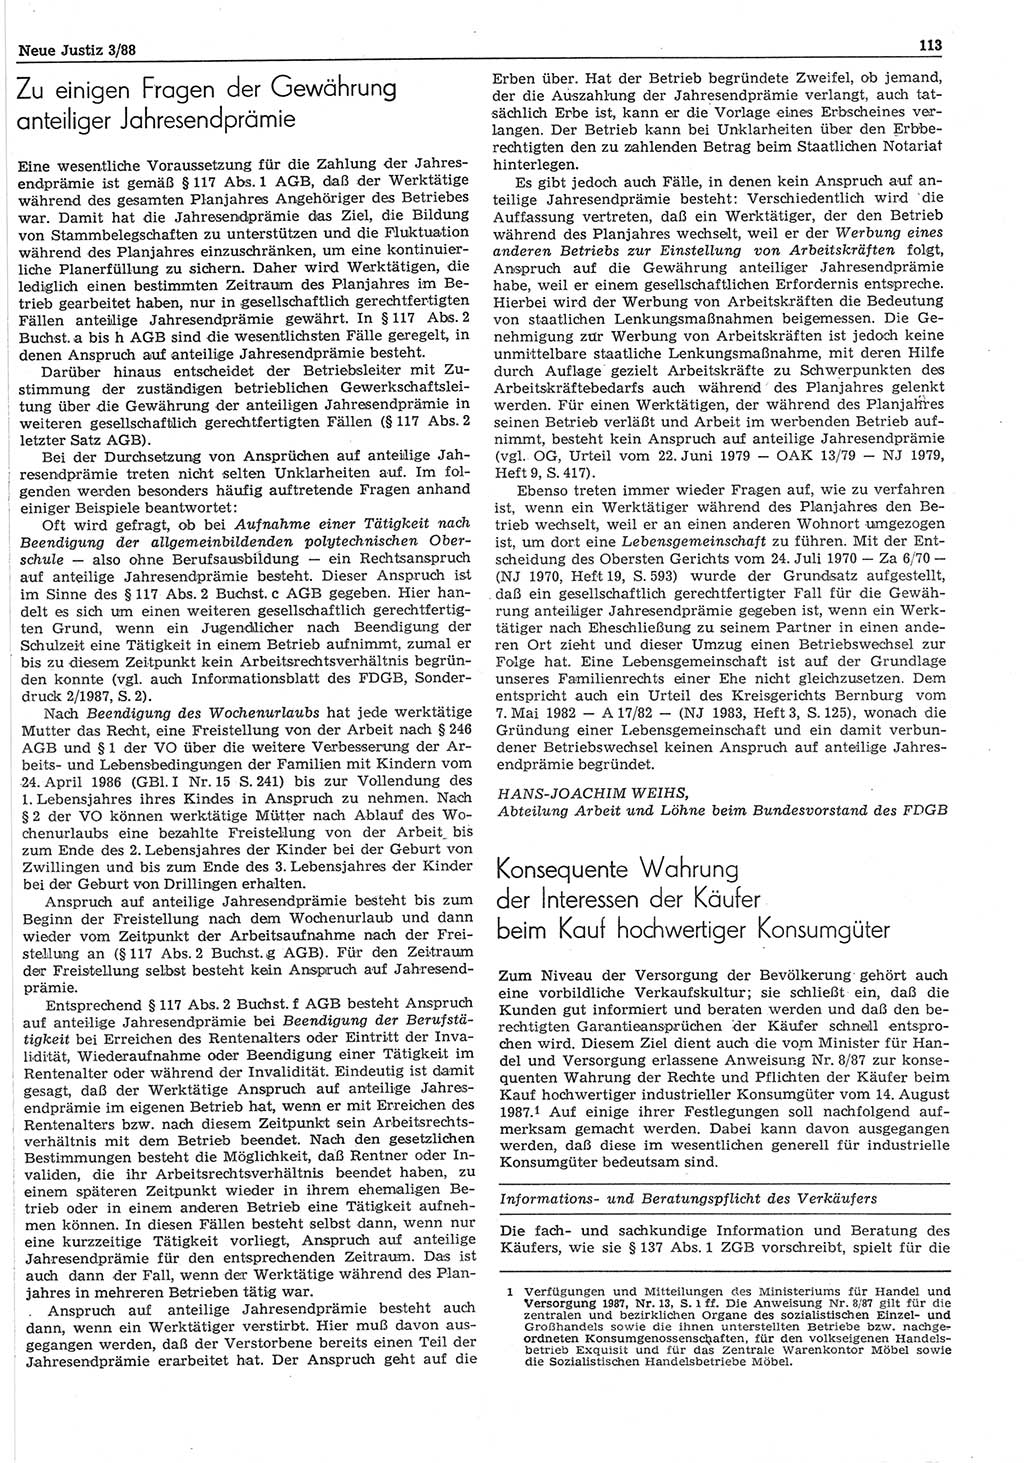 Neue Justiz (NJ), Zeitschrift für sozialistisches Recht und Gesetzlichkeit [Deutsche Demokratische Republik (DDR)], 42. Jahrgang 1988, Seite 113 (NJ DDR 1988, S. 113)